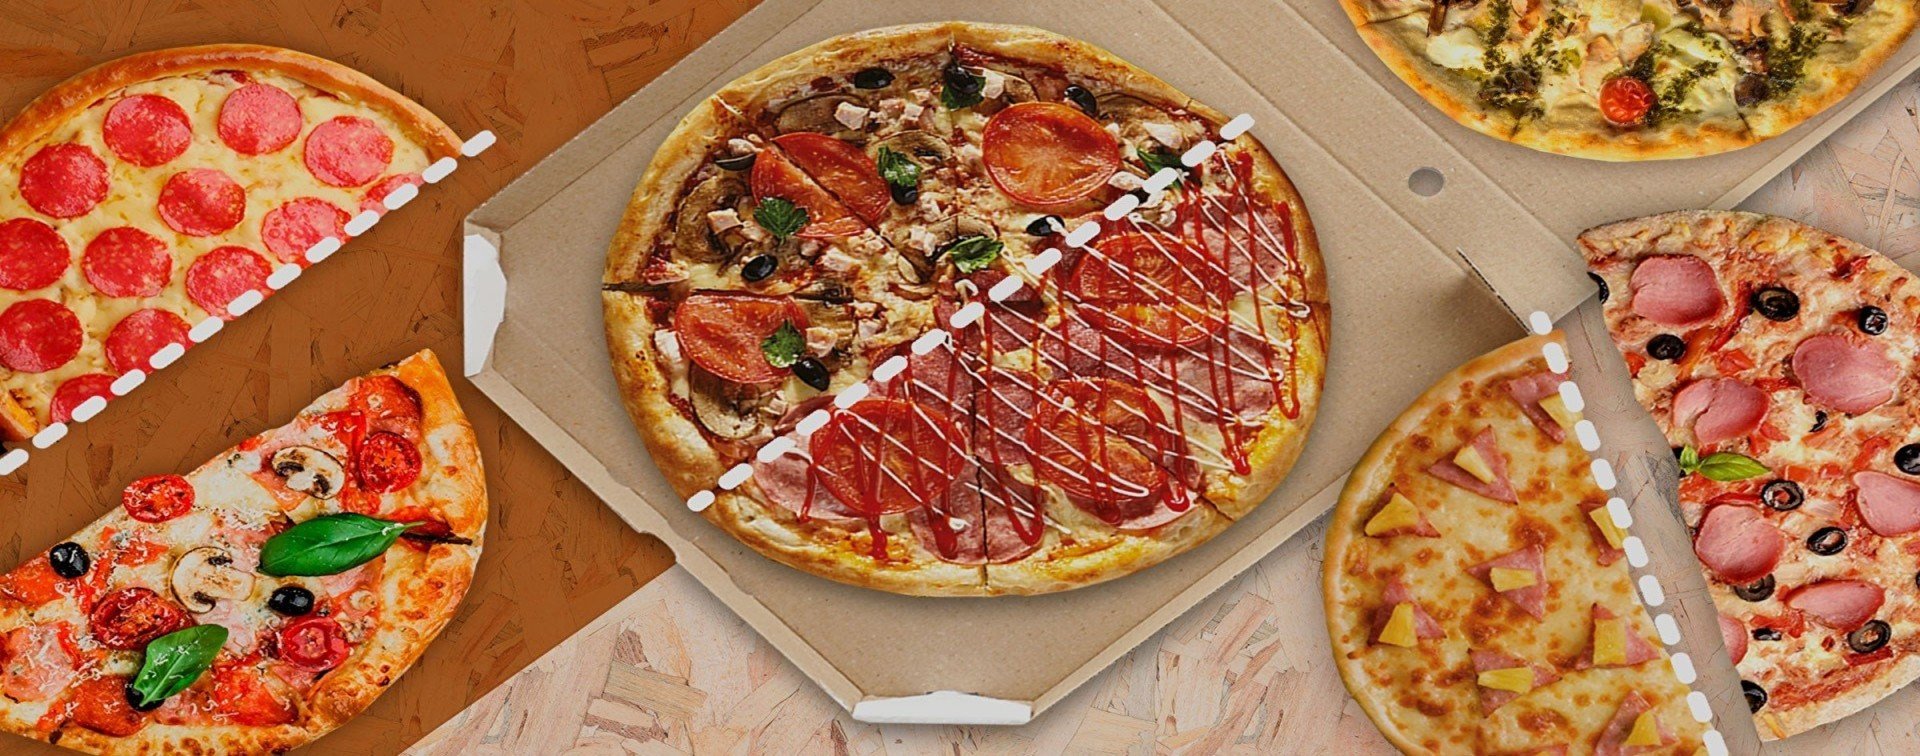 ассорти пицца тюмень официальный сайт фото 46